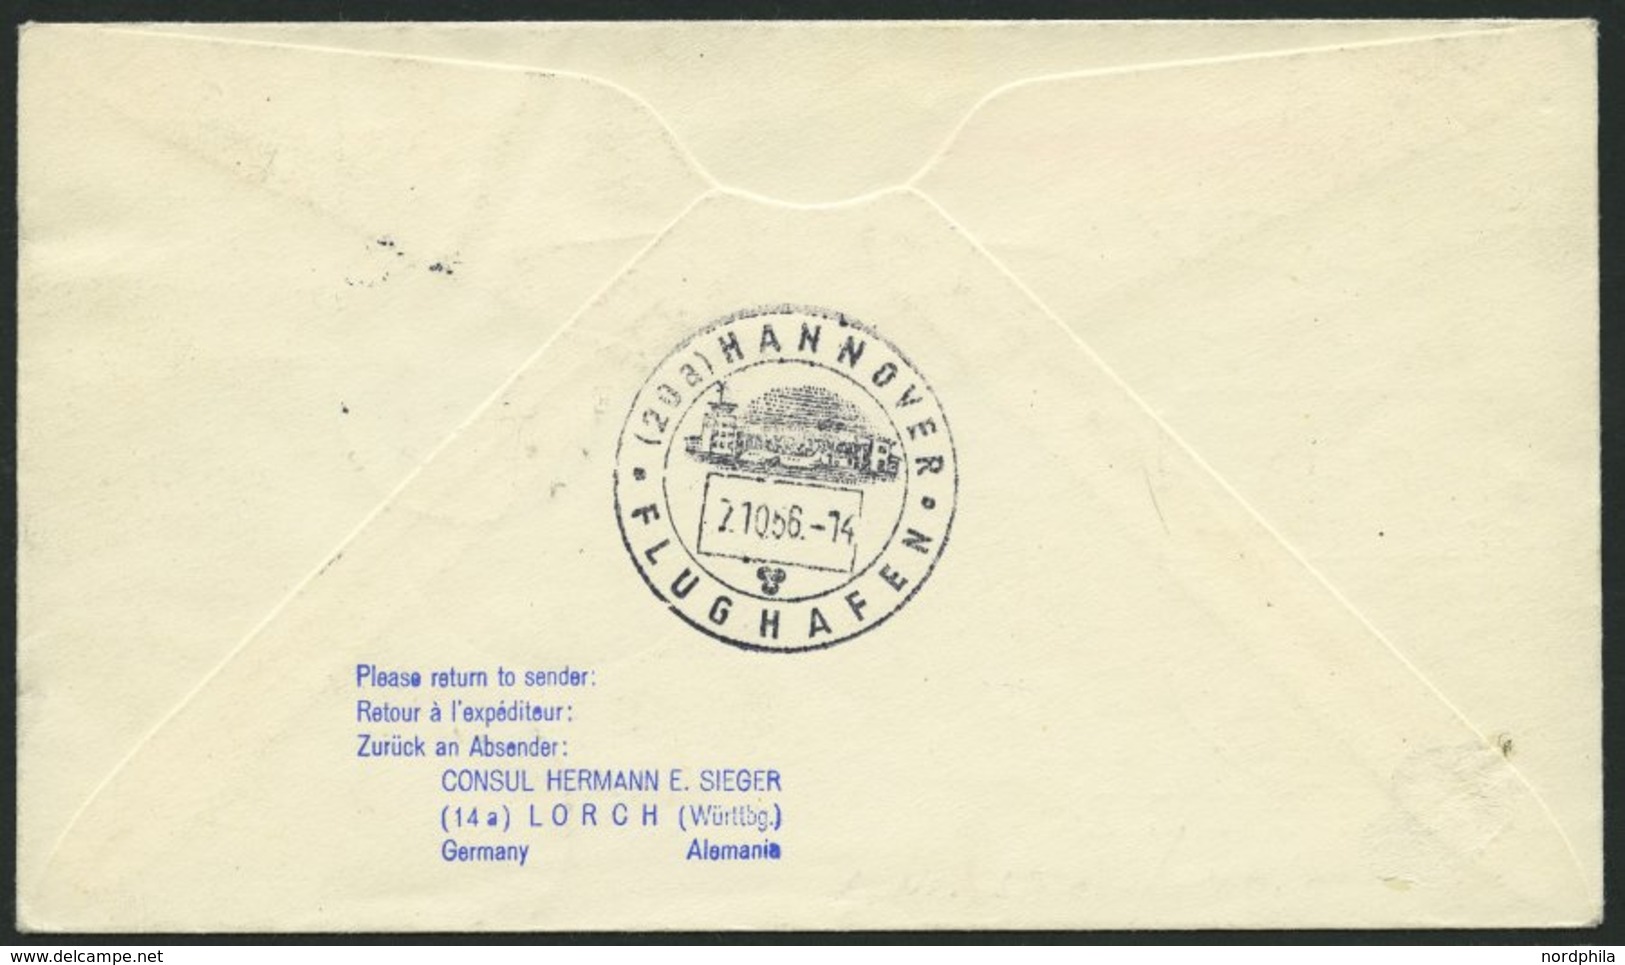 DEUTSCHE LUFTHANSA 115 BRIEF, 7.10.1956, Hamburg-Hannover, Prachtbrief - Used Stamps